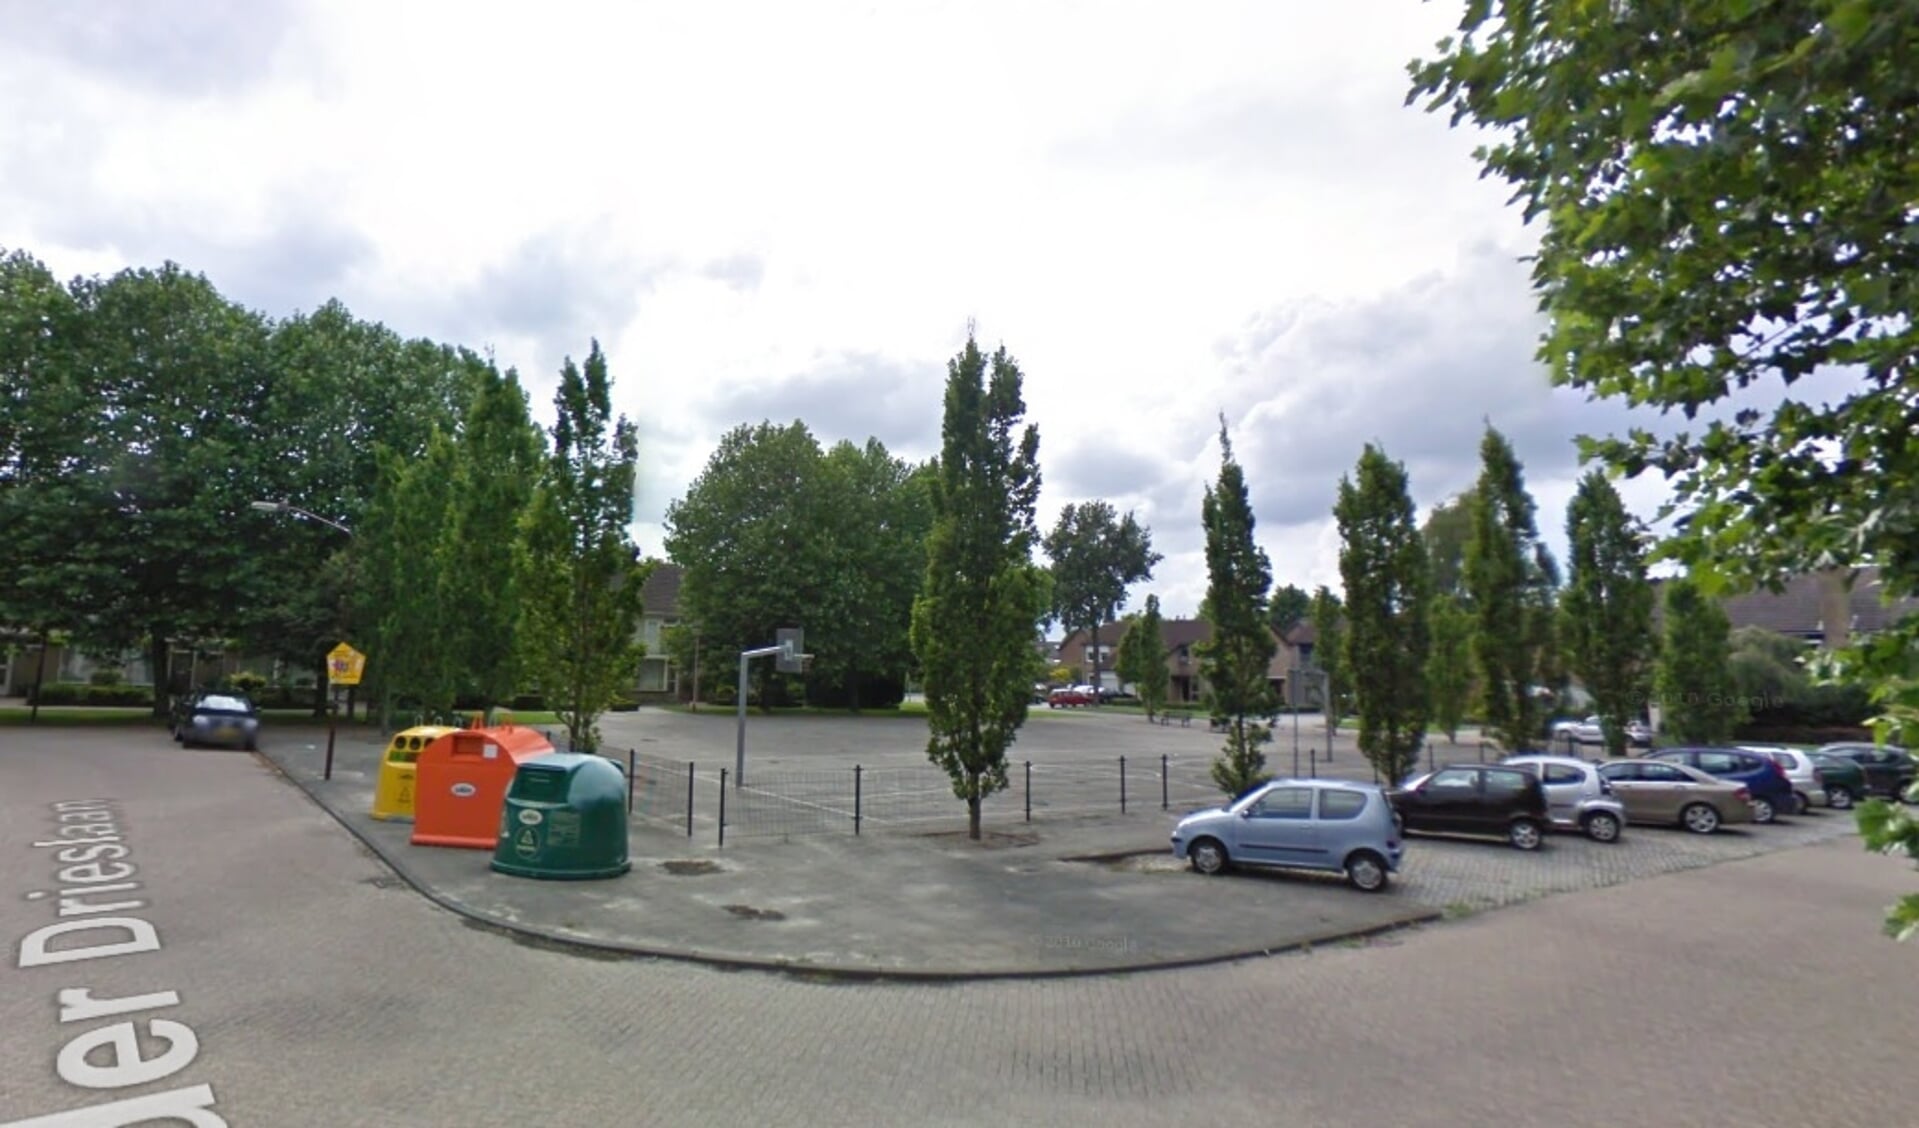 Er is alvast 25000 euro beschikbaar gesteld om voorbereidingen te treffen voor de aanpak van het basketbalplein in Oudenbosch.